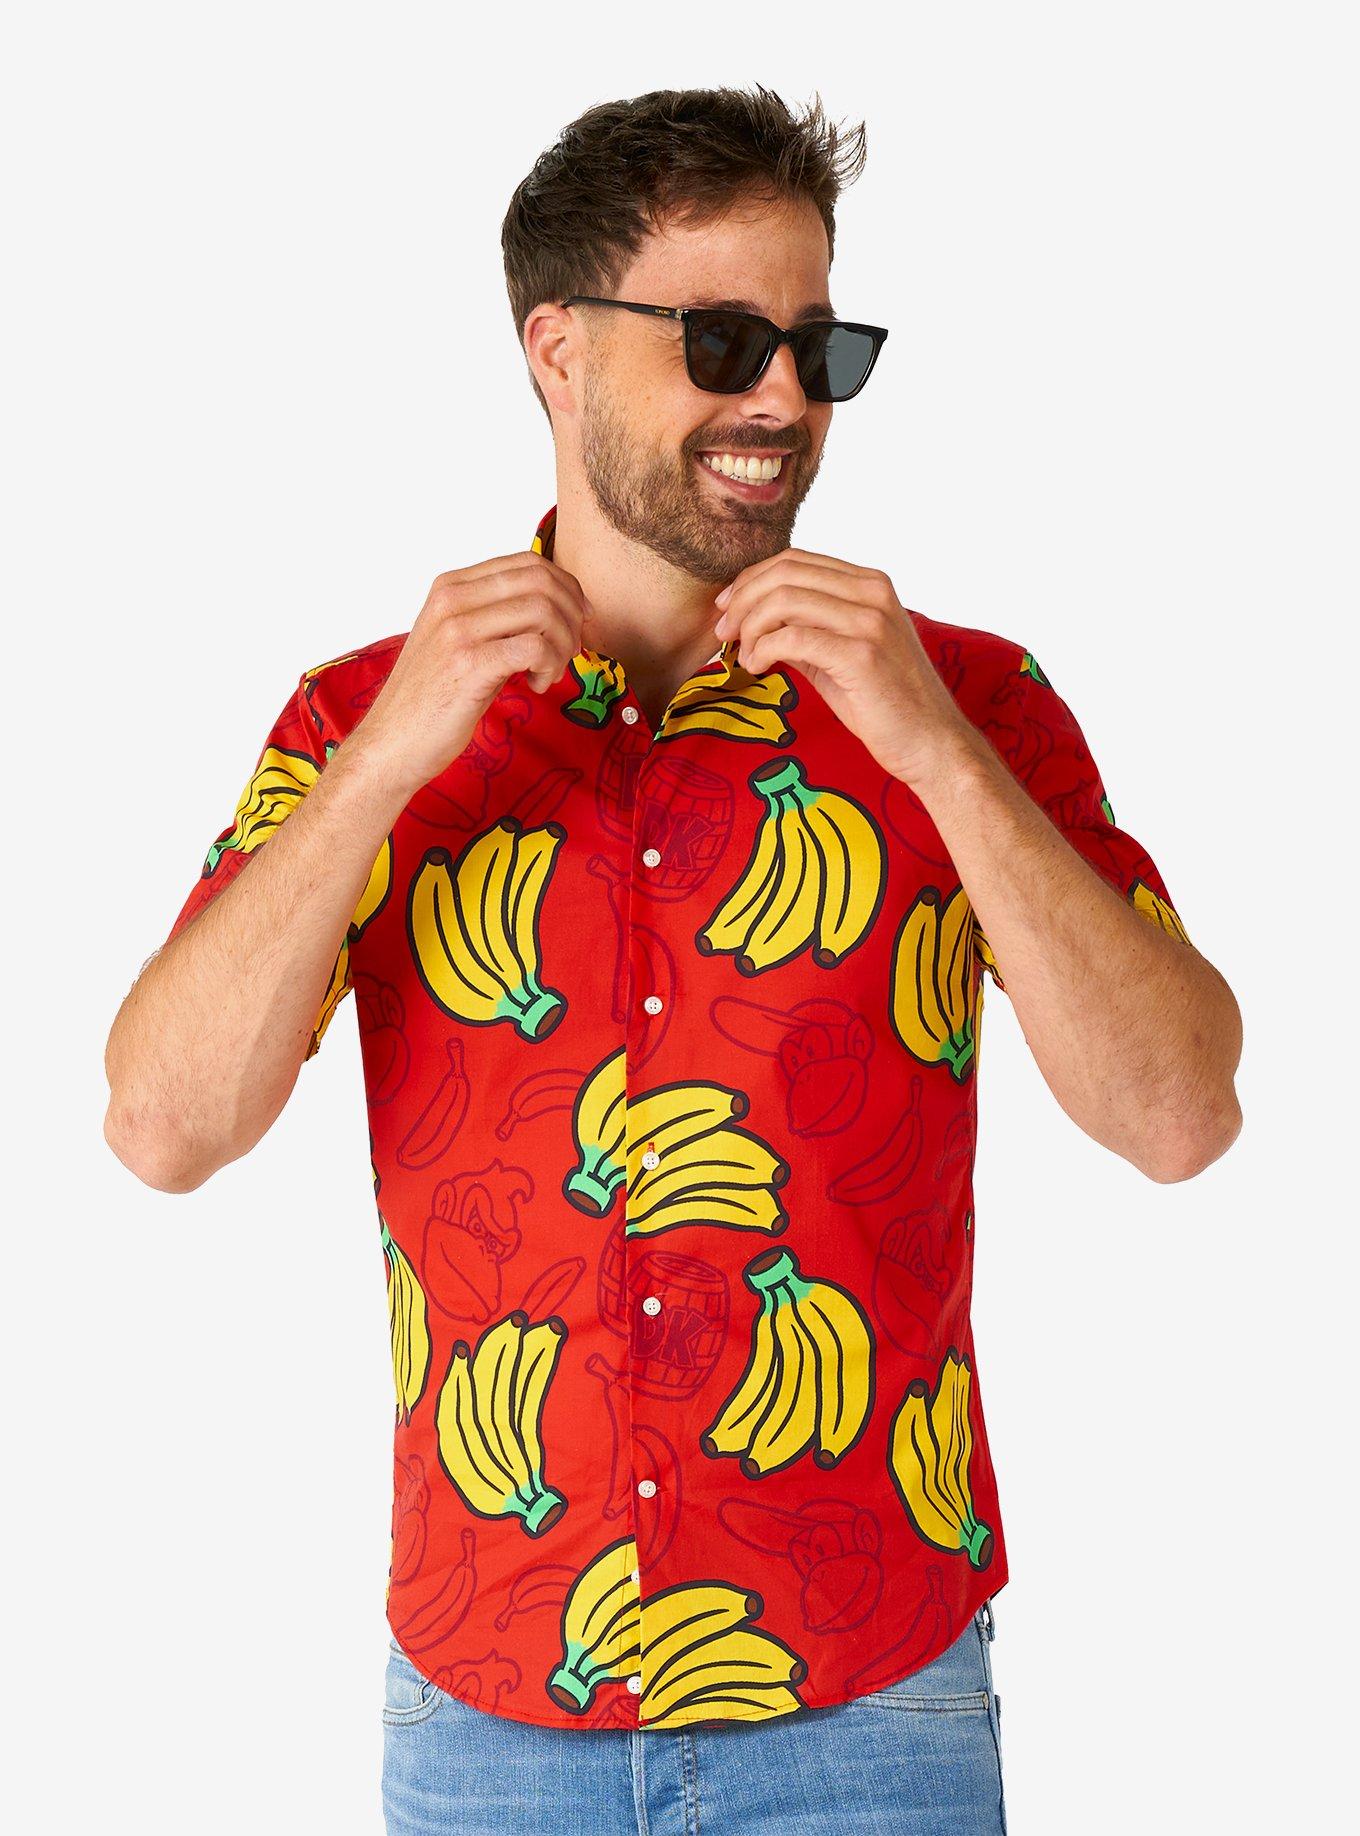 Donkey Kong Short Sleeve Button-Up Shirt